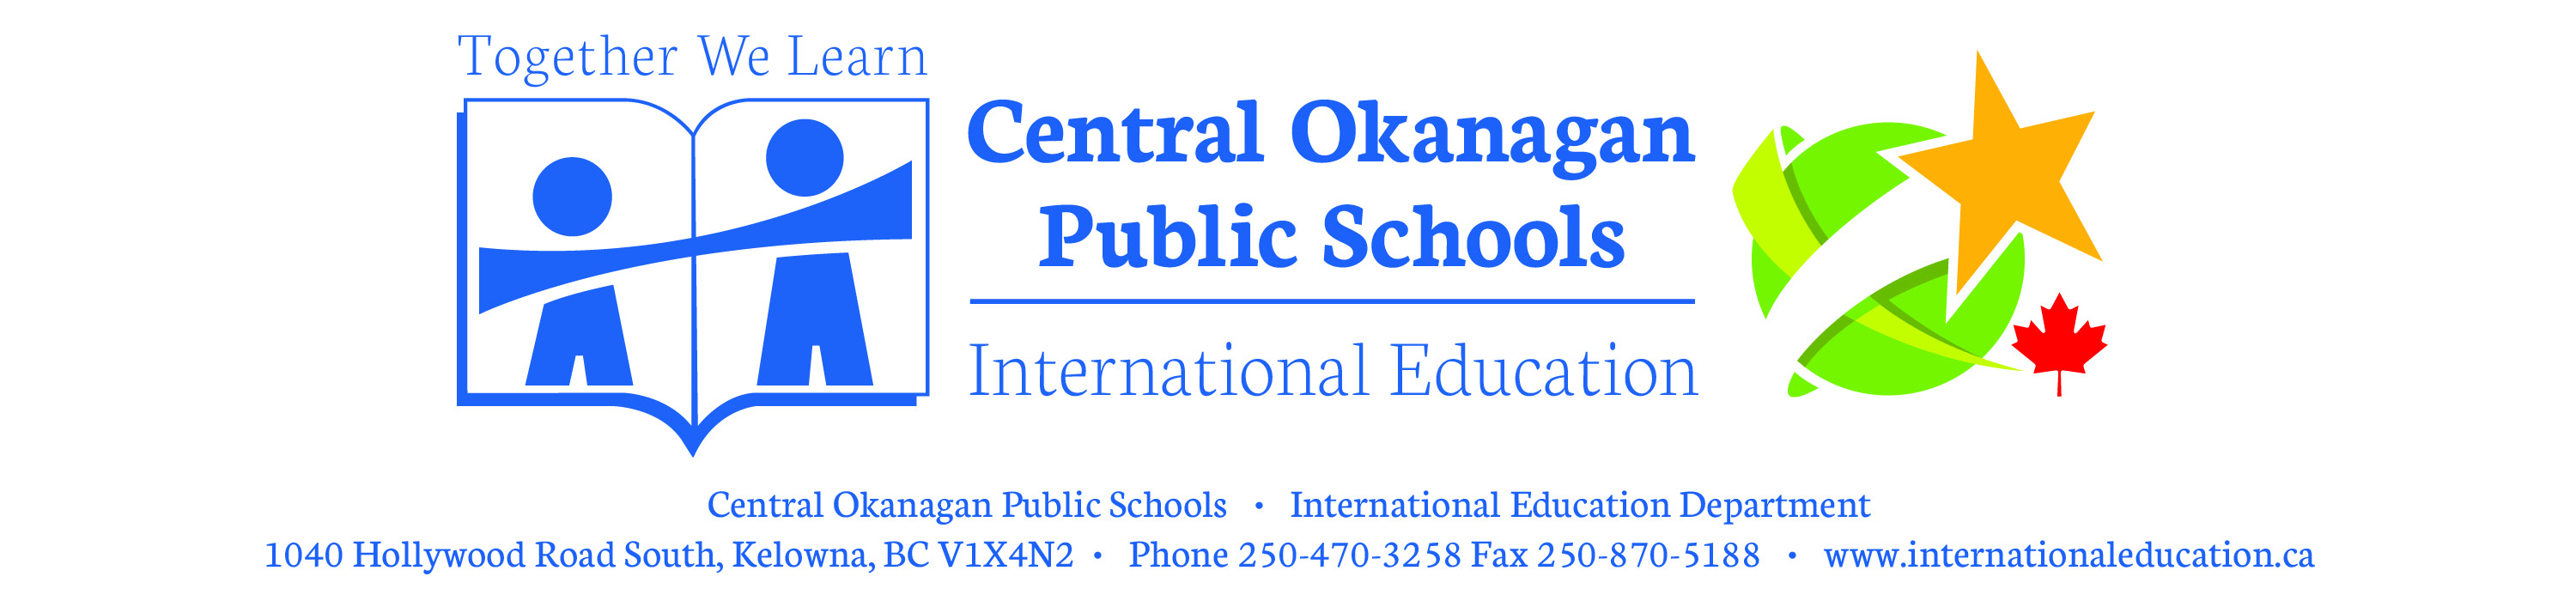 CentralOkanaganPublicSchools_Int'lEd_Header.jpg